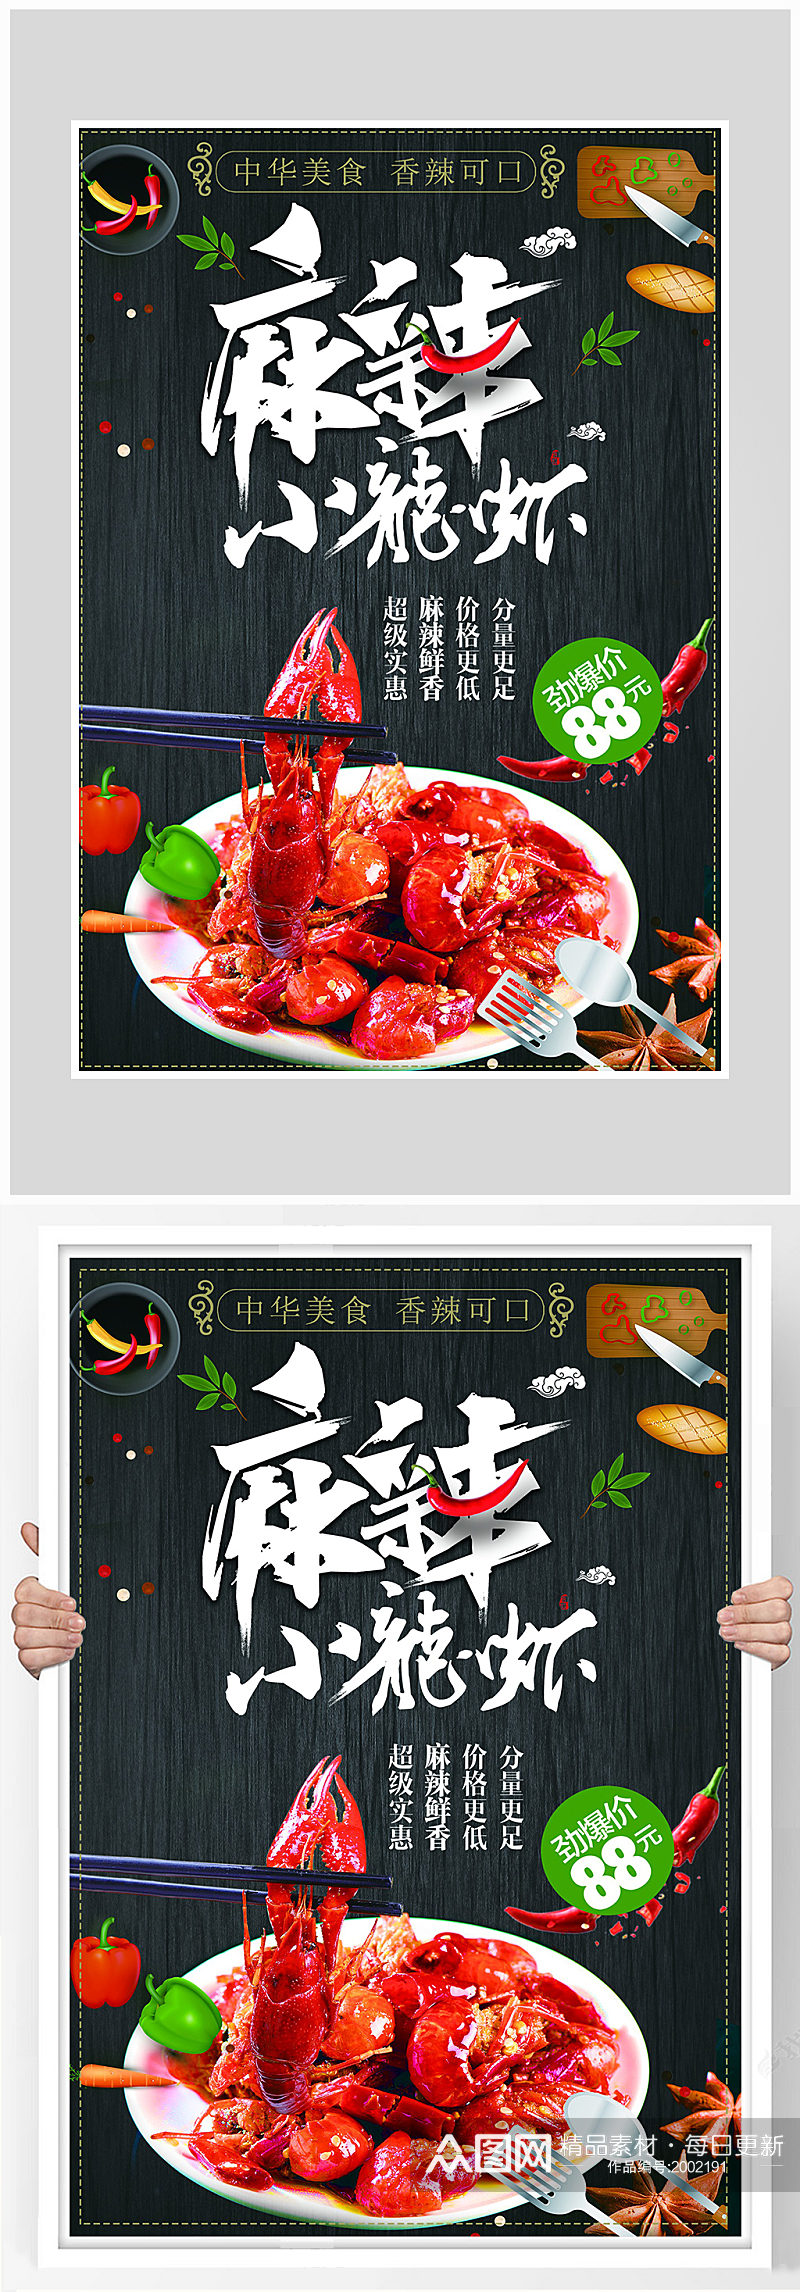 创意质感麻辣小龙虾烧烤海报设计素材